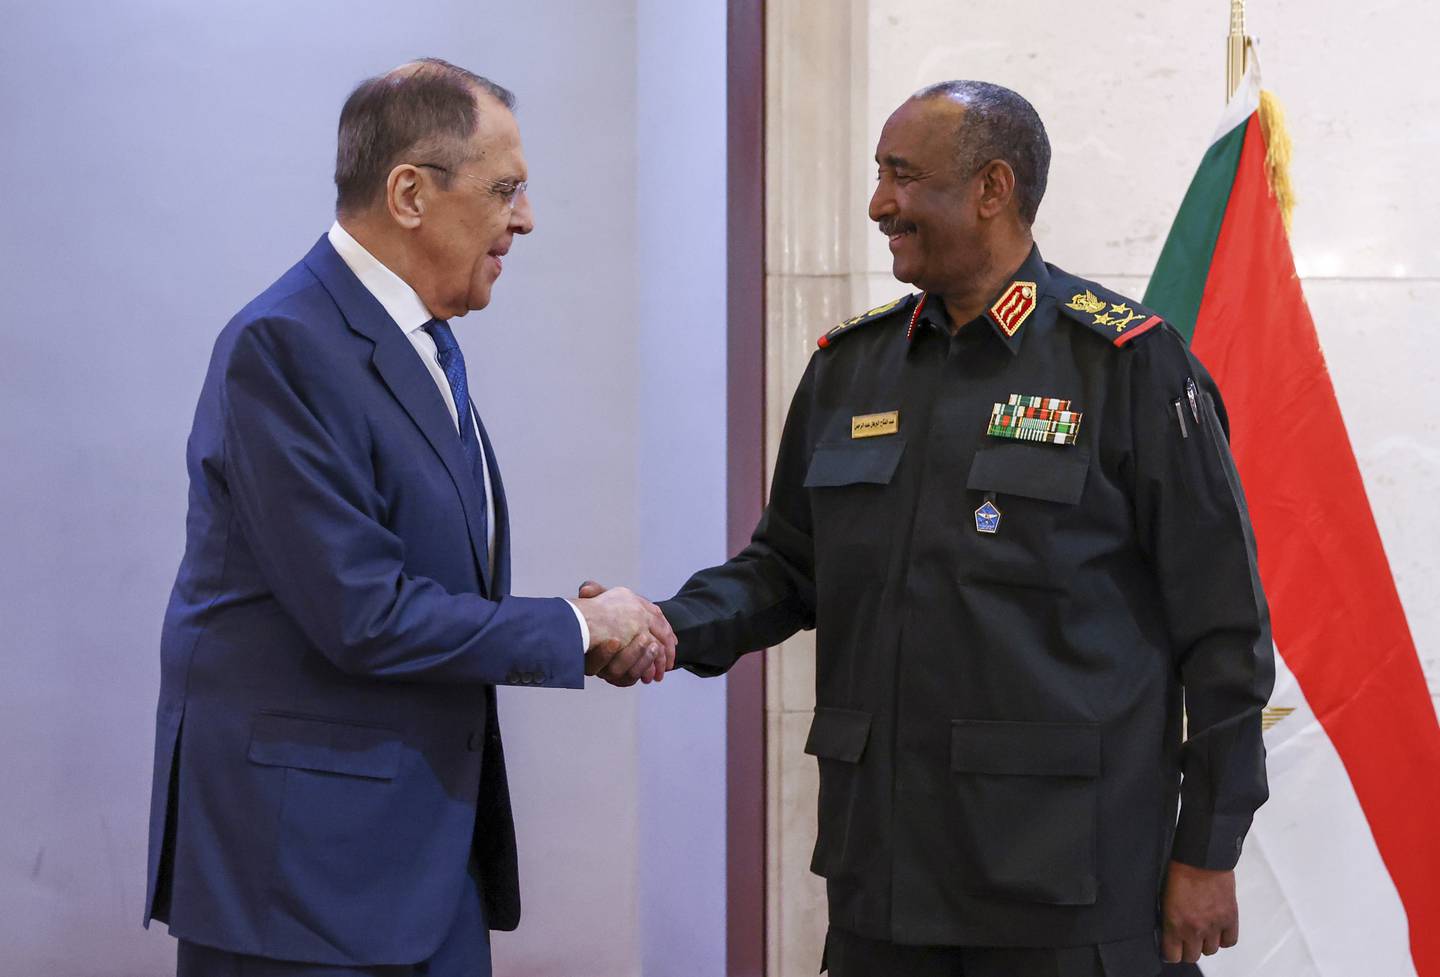 Der russische Außenminister Sergej Lawrow schüttelt am 9. Februar in Khartum dem sudanesischen Militärführer General Abdel Fattah Al Burhan die Hand. EPA